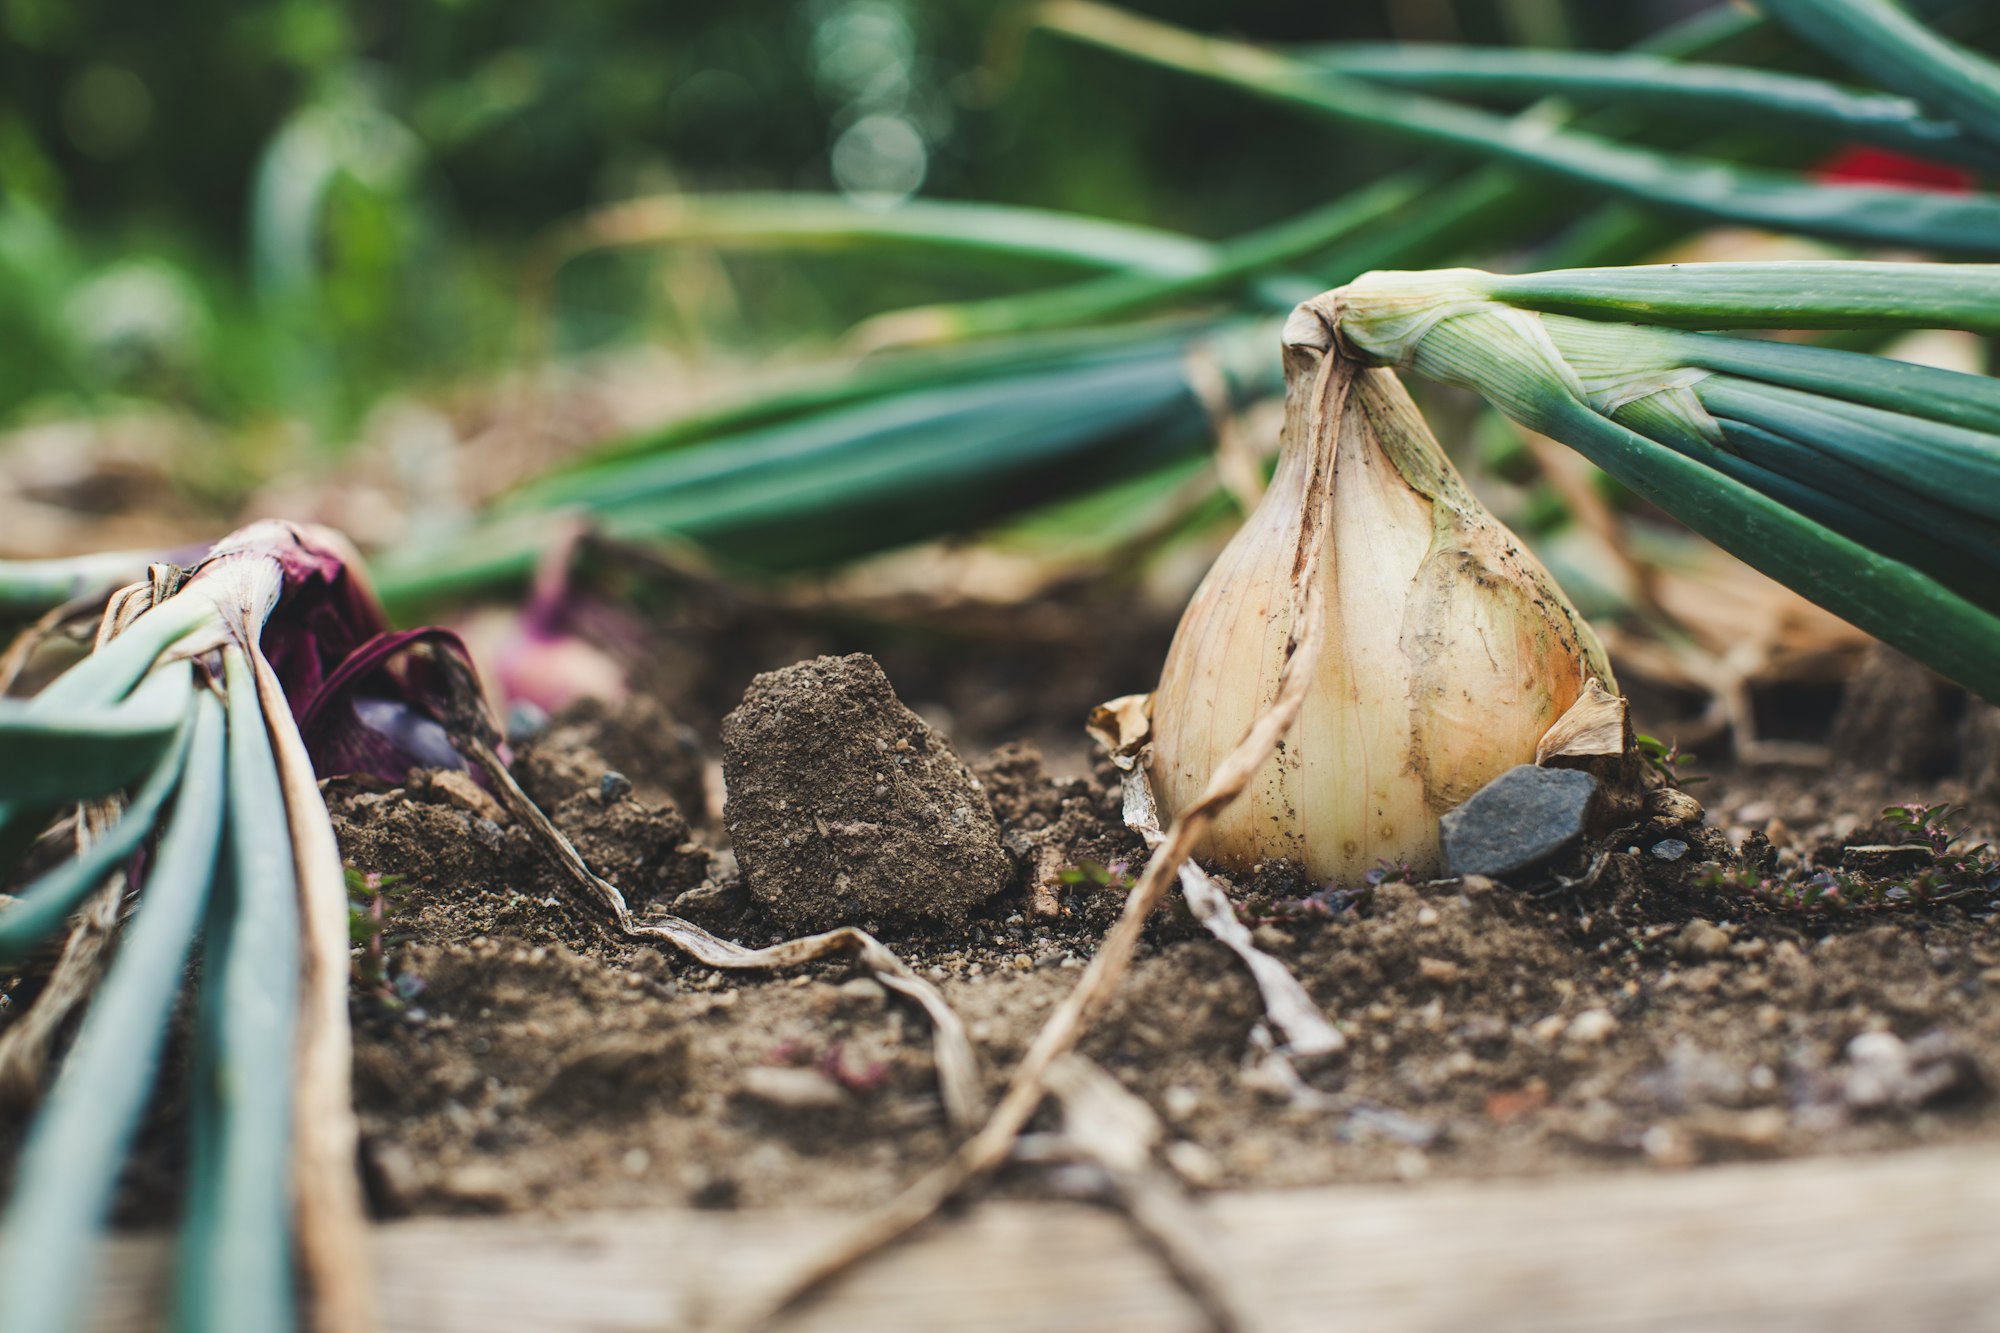 garlic bulbs on the soil